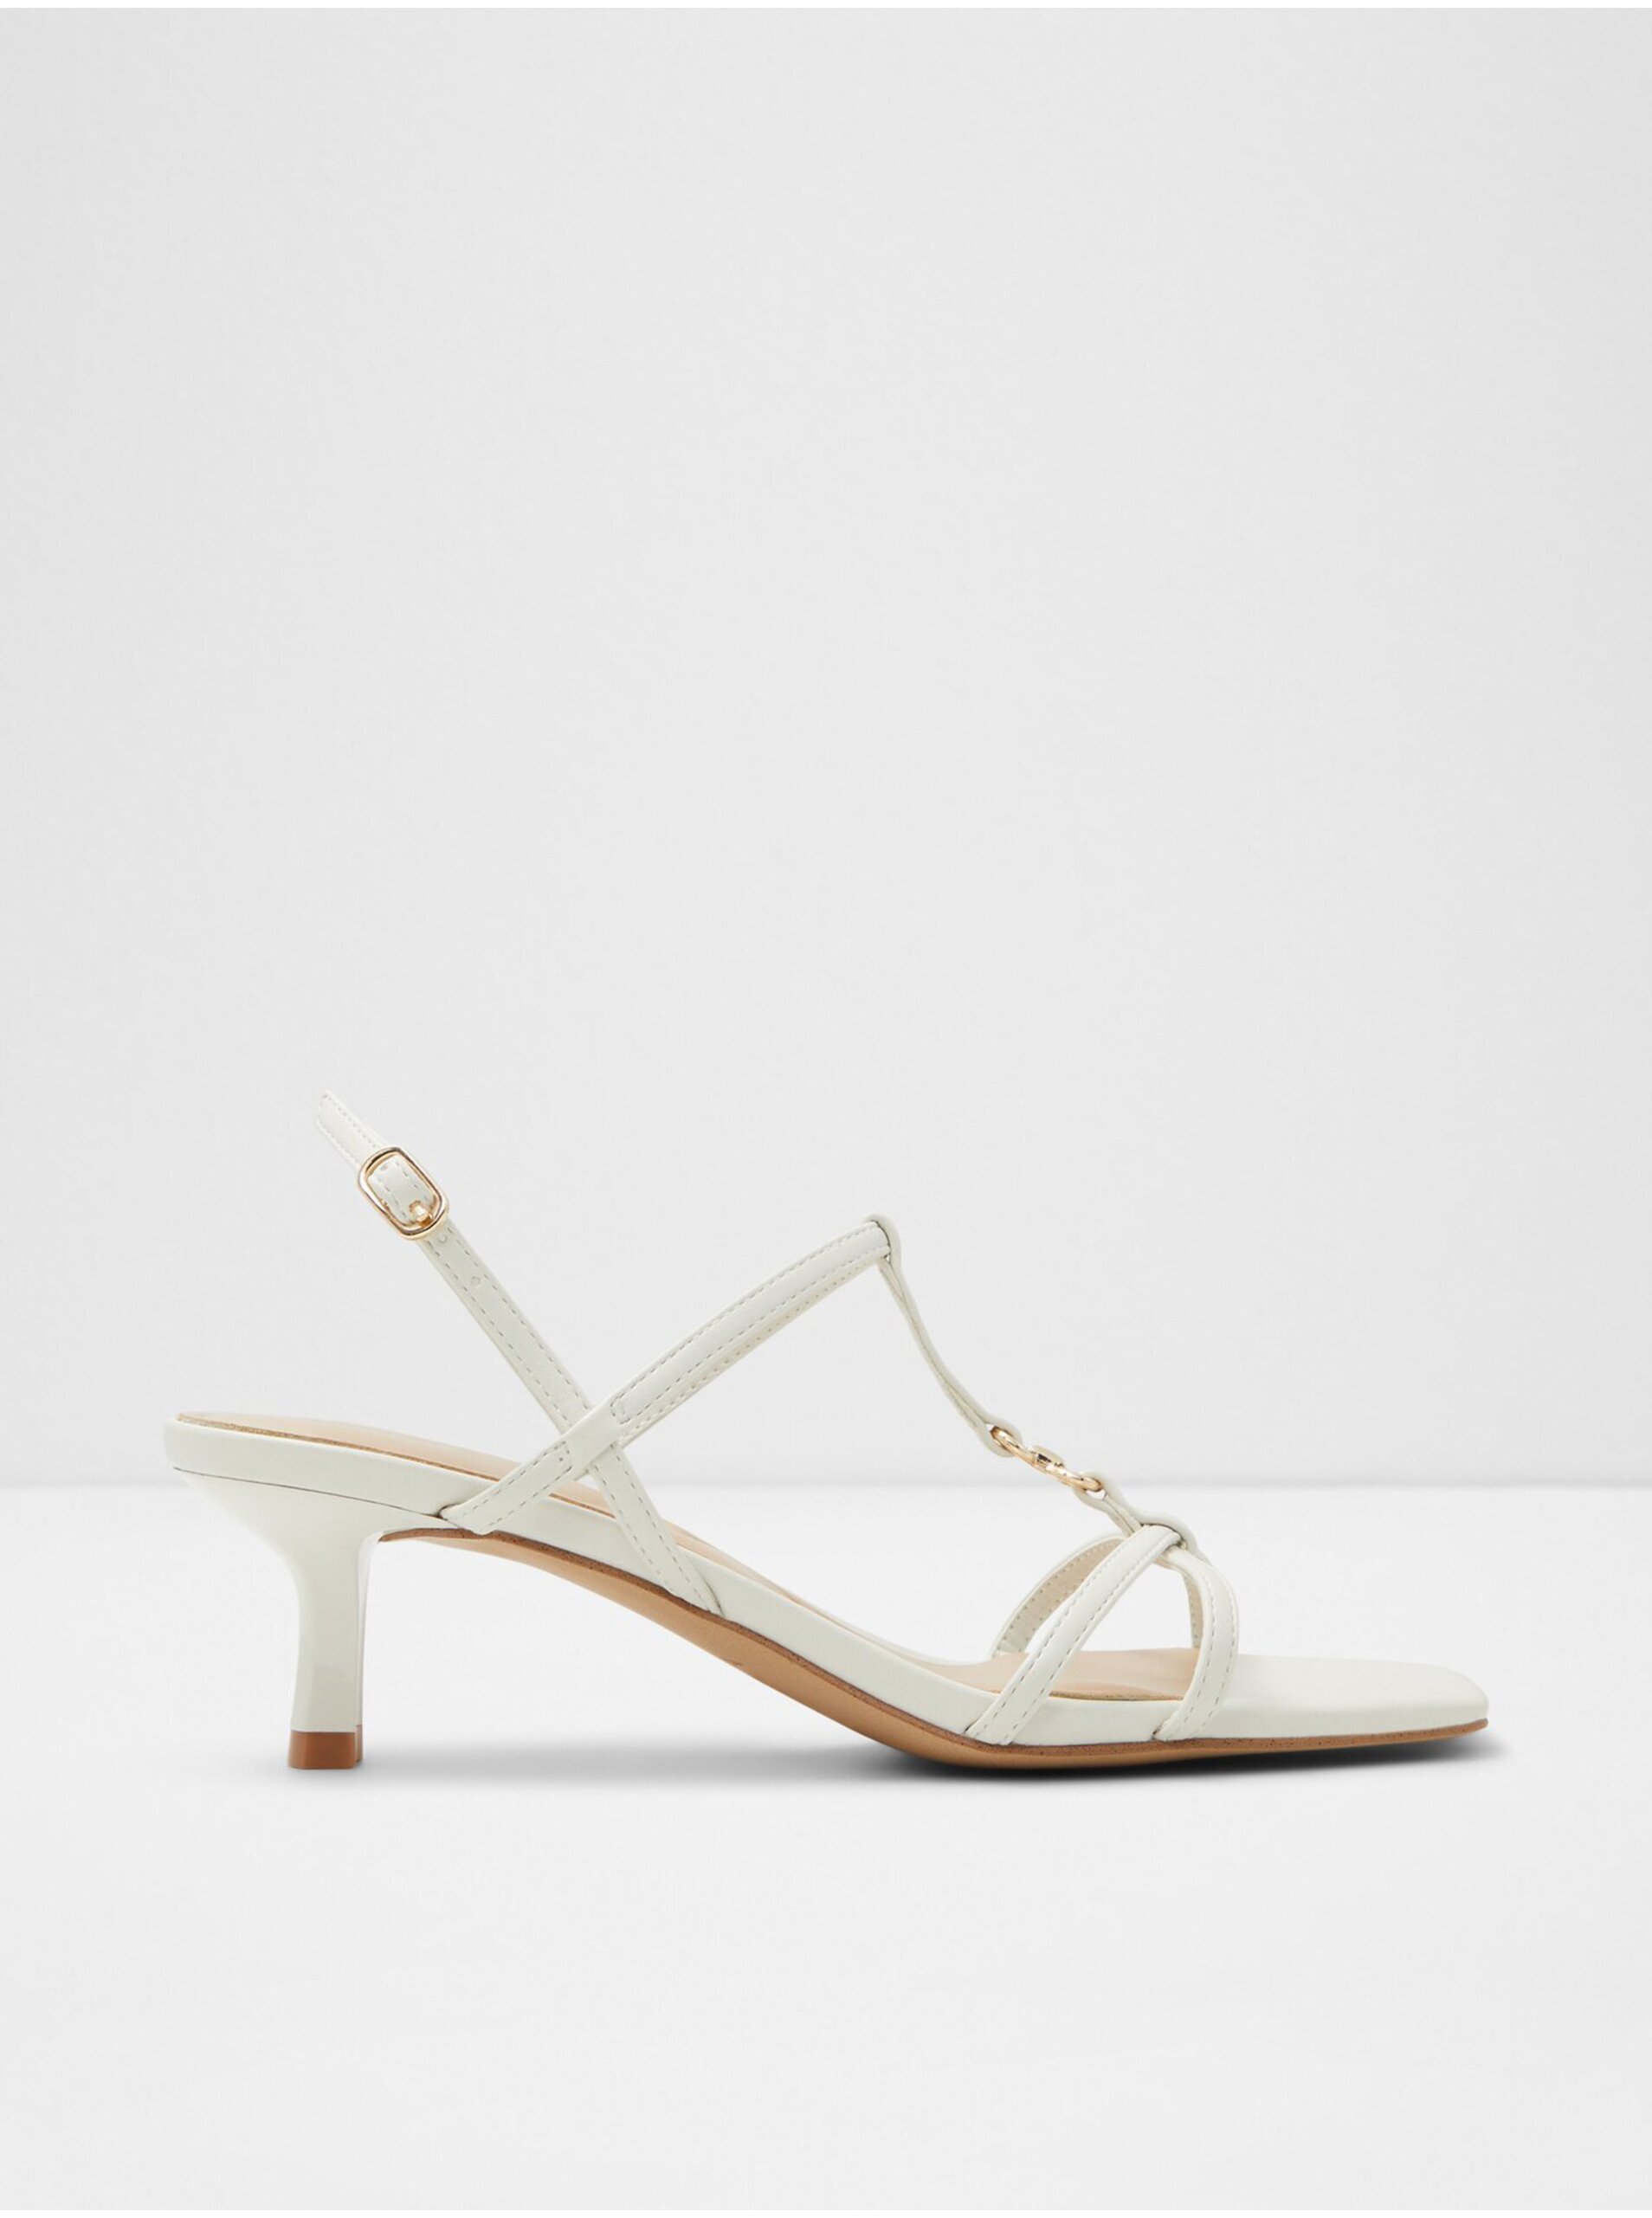 E-shop Bílé dámské sandály na podpatku ALDO Josefina